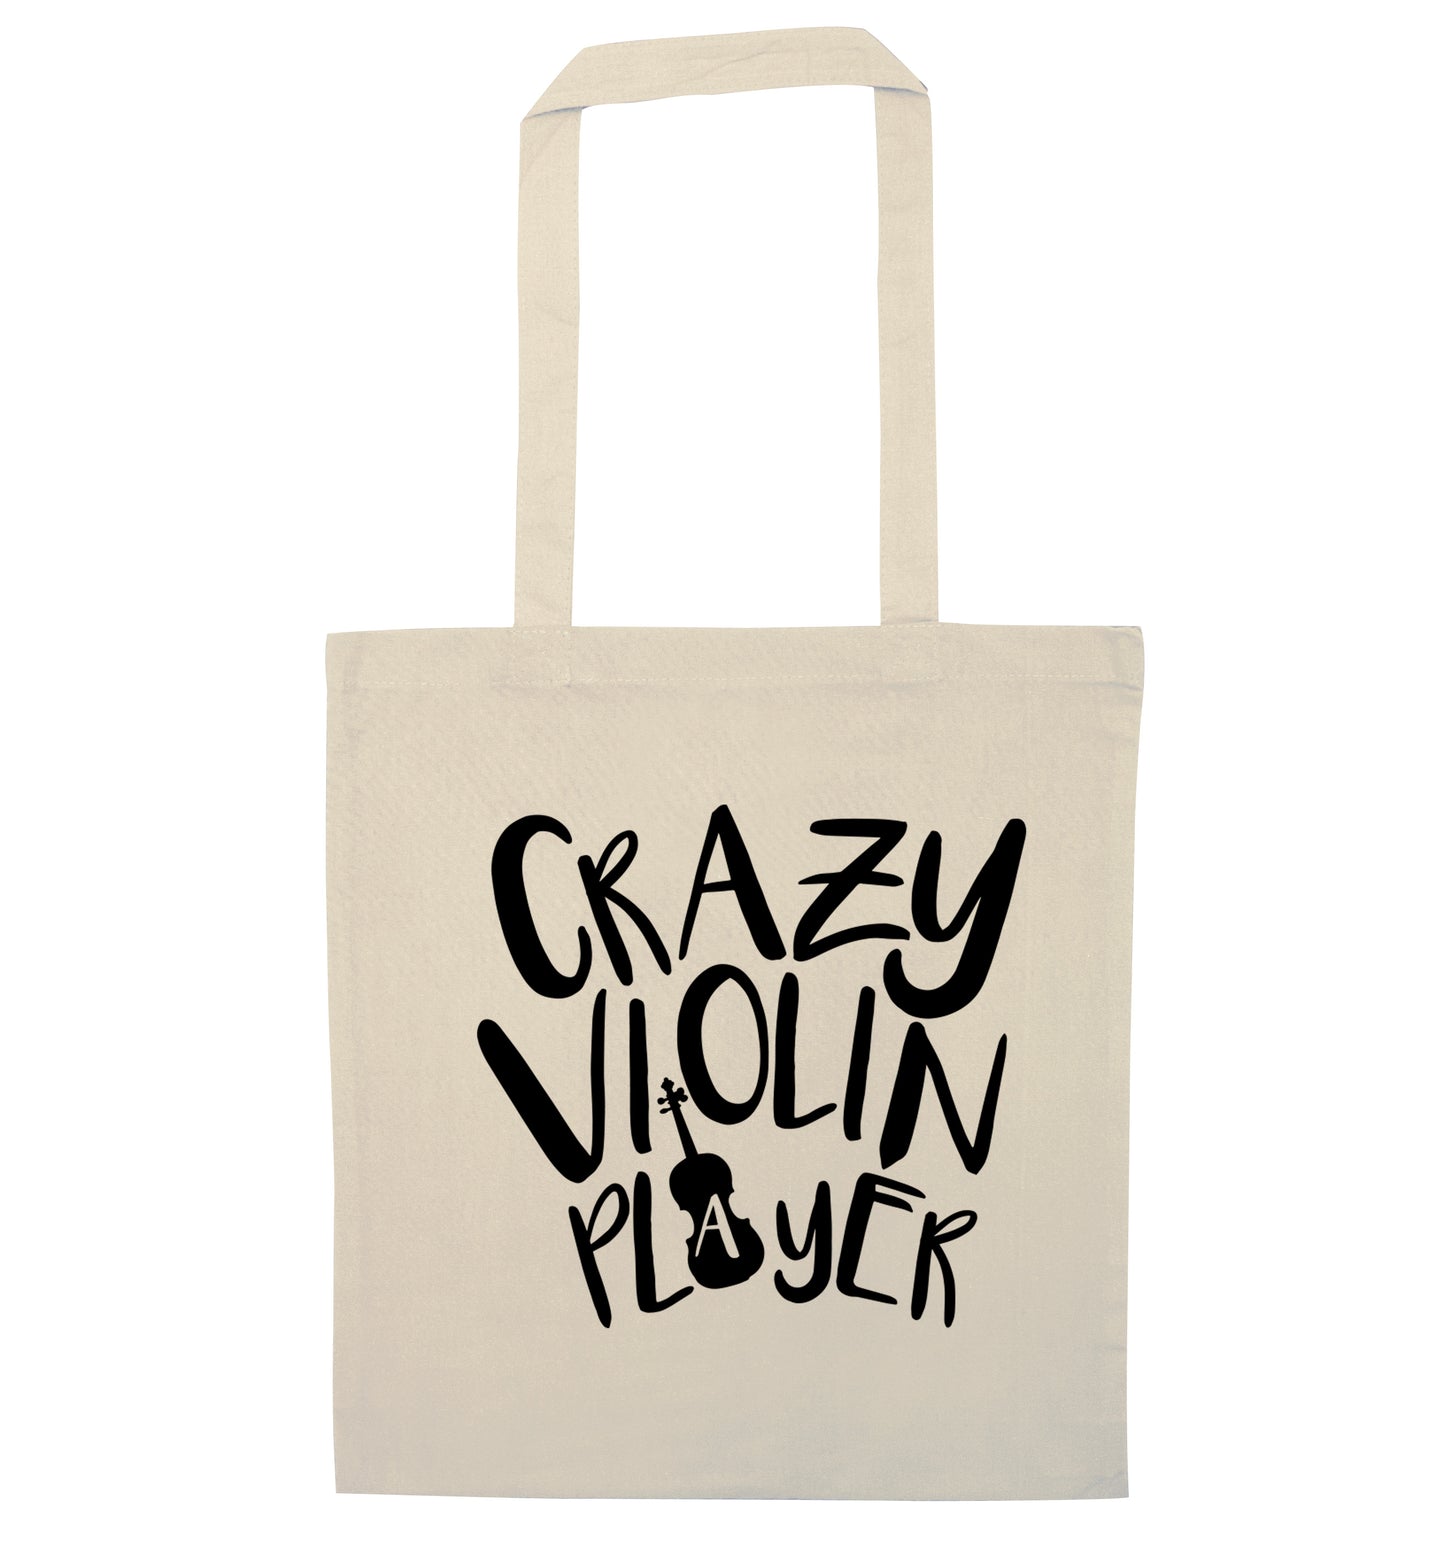 Crazy Violin Player natural tote bag